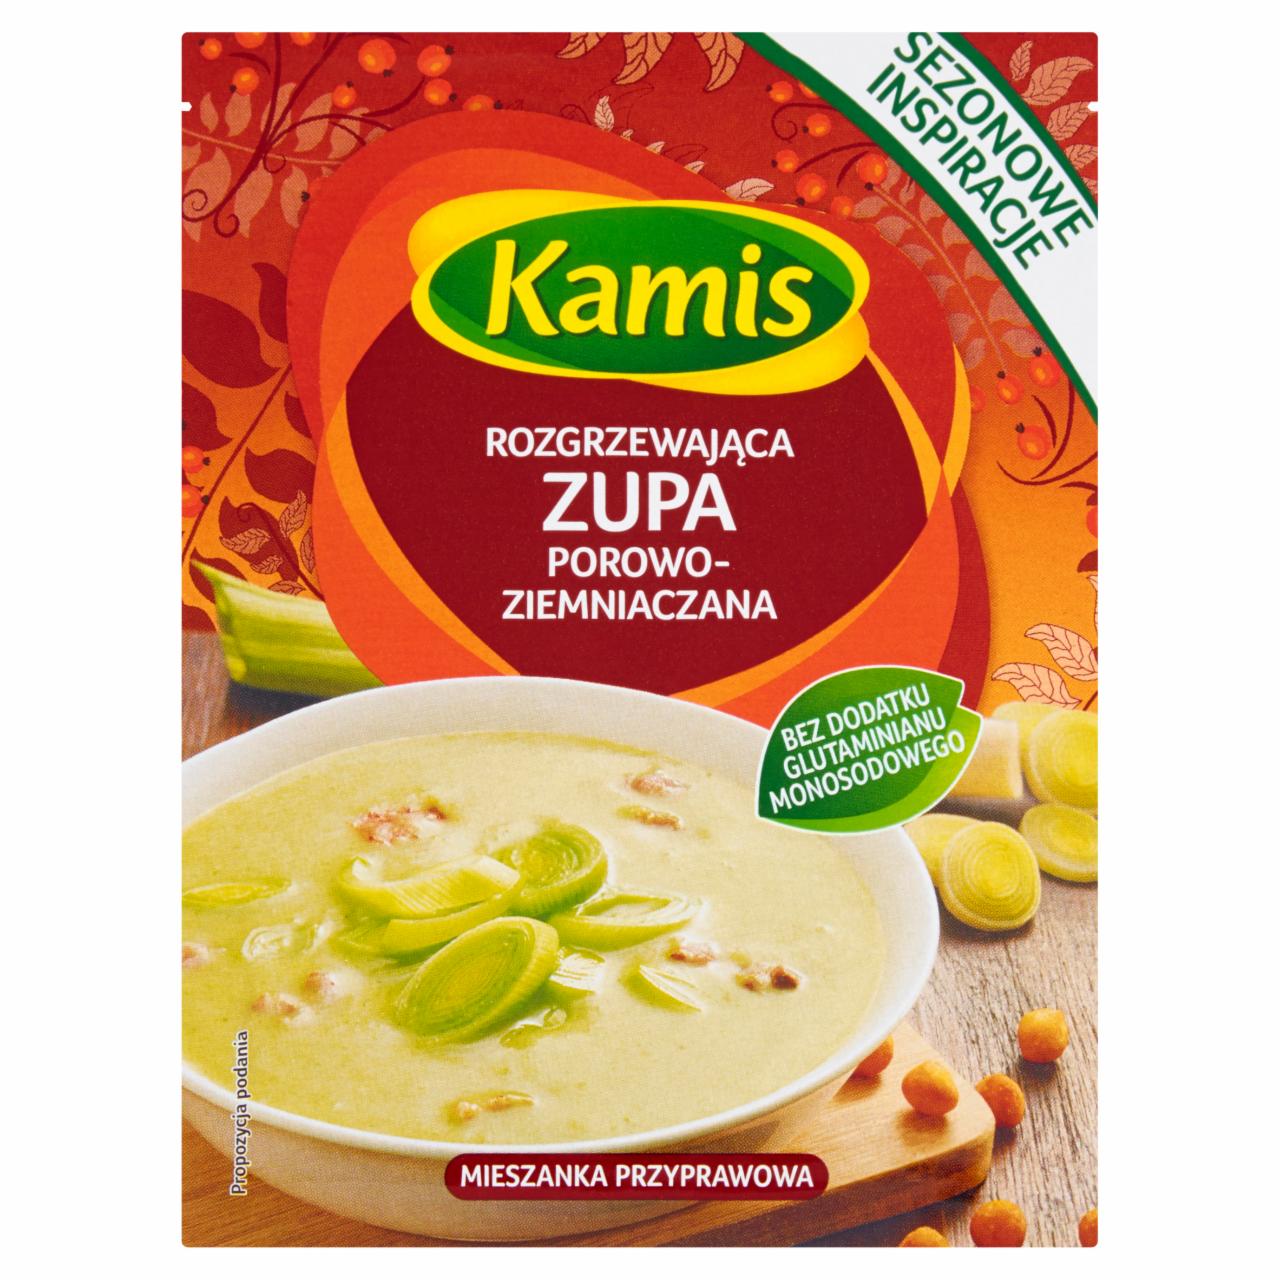 Zdjęcia - Kamis Rozgrzewająca zupa porowo-ziemniaczana Mieszanka przyprawowa 15 g